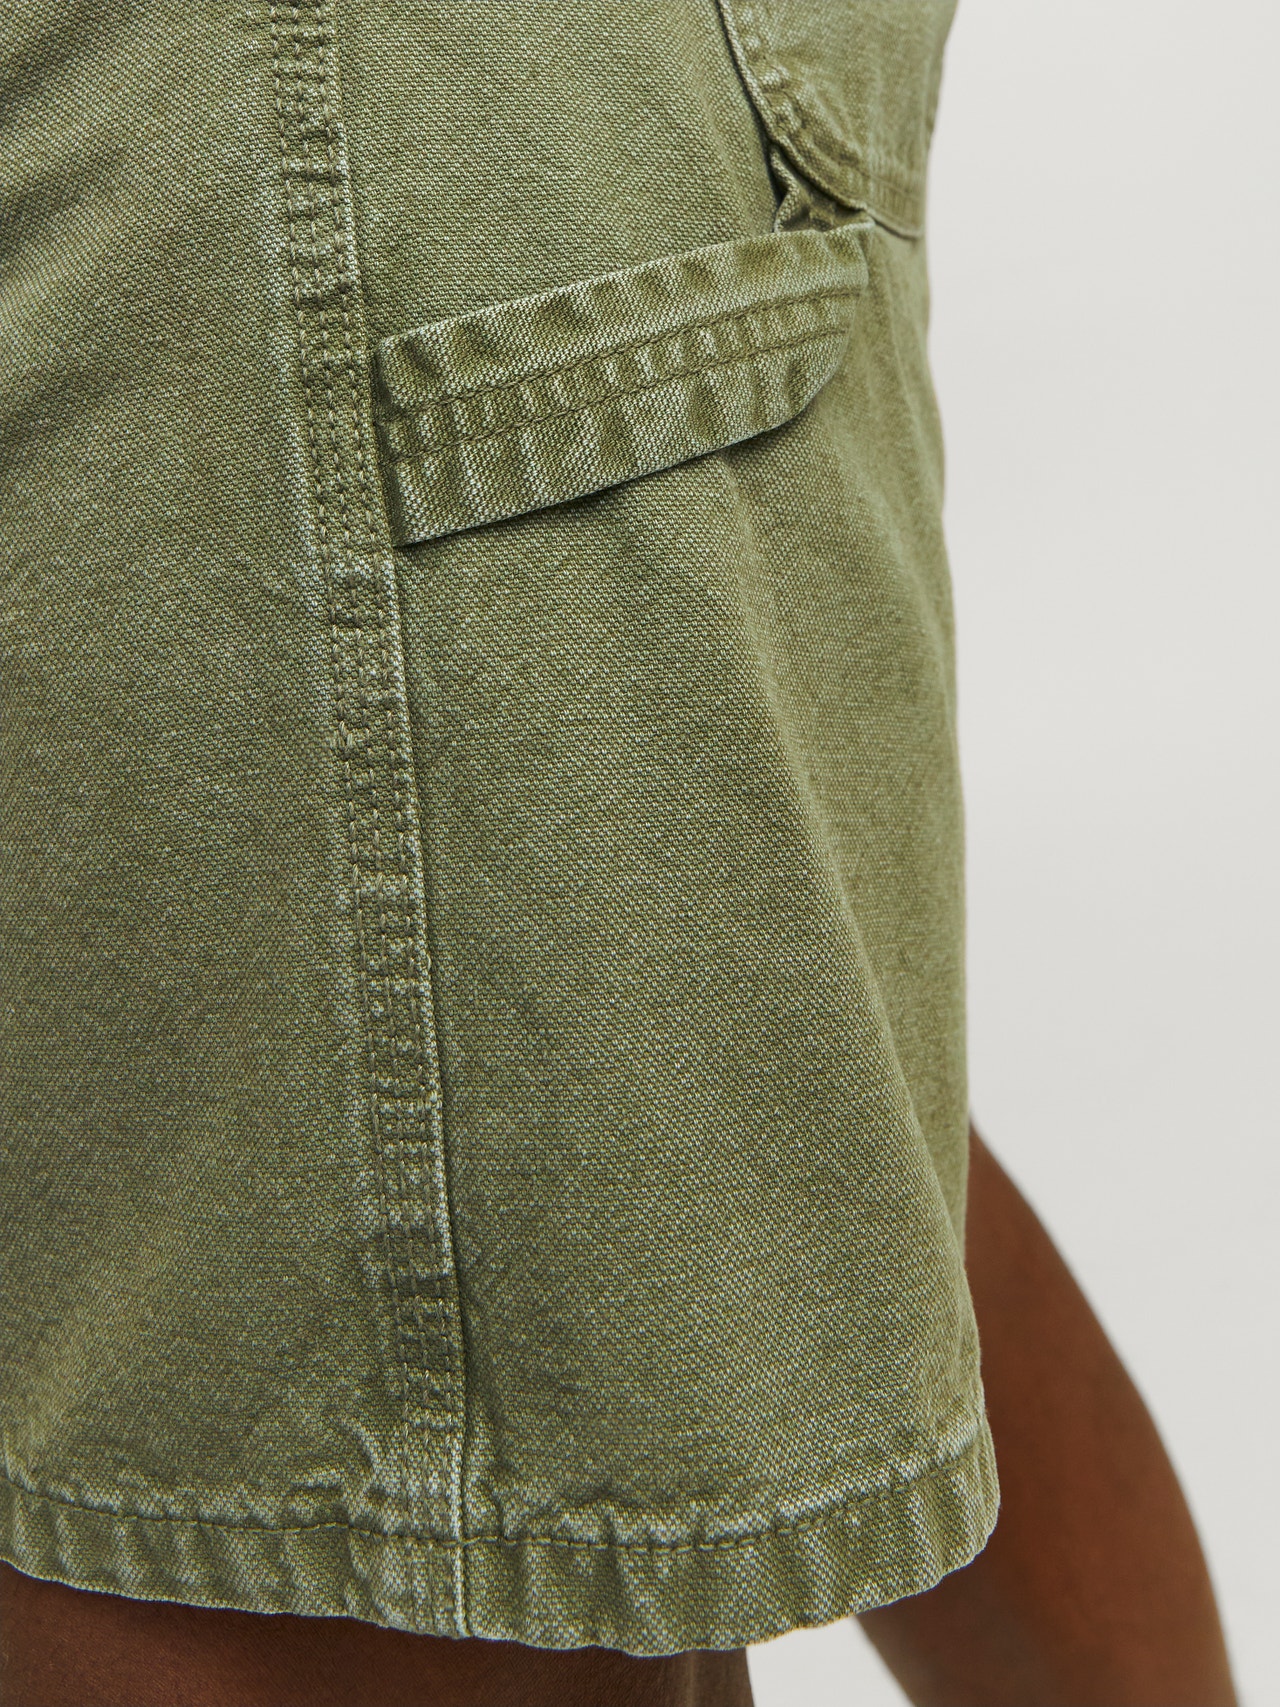 Jack & Jones Bermuda in jeans Loose Fit -Deep Lichen Green - 12252814